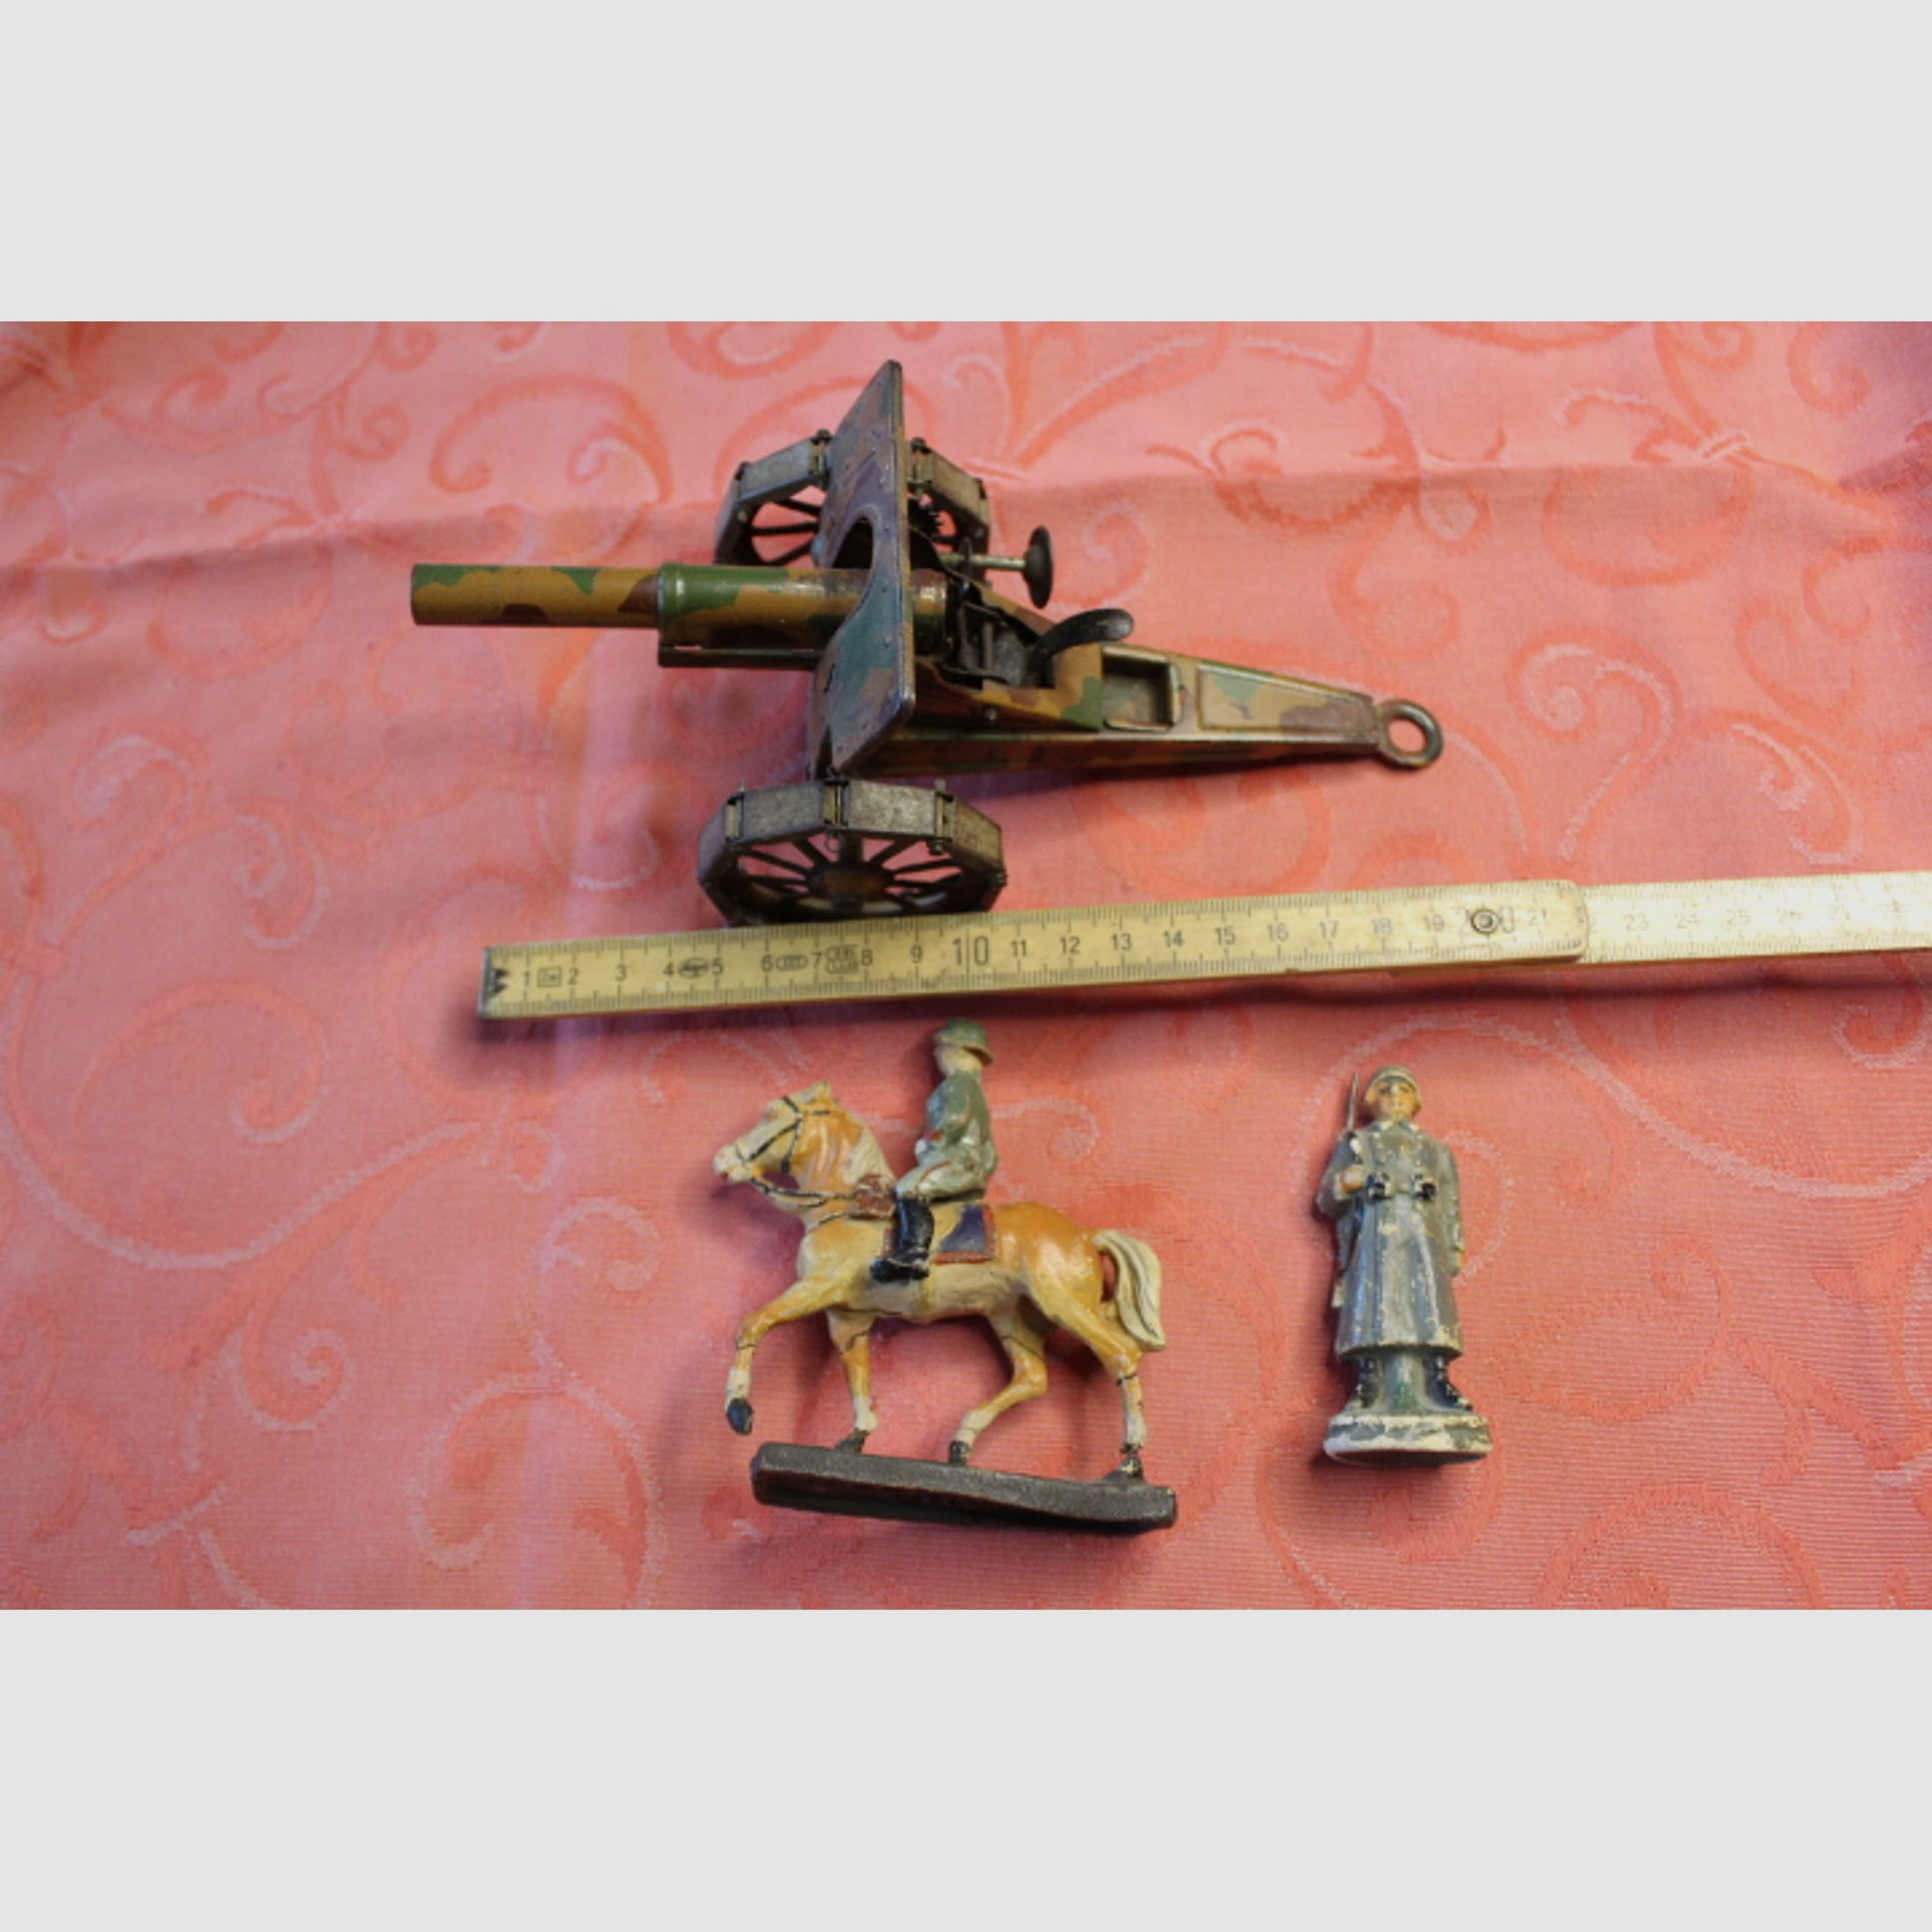 WKI Spielzeug Kanone mit Tarnanstrich und 2 Figuren. Originale.